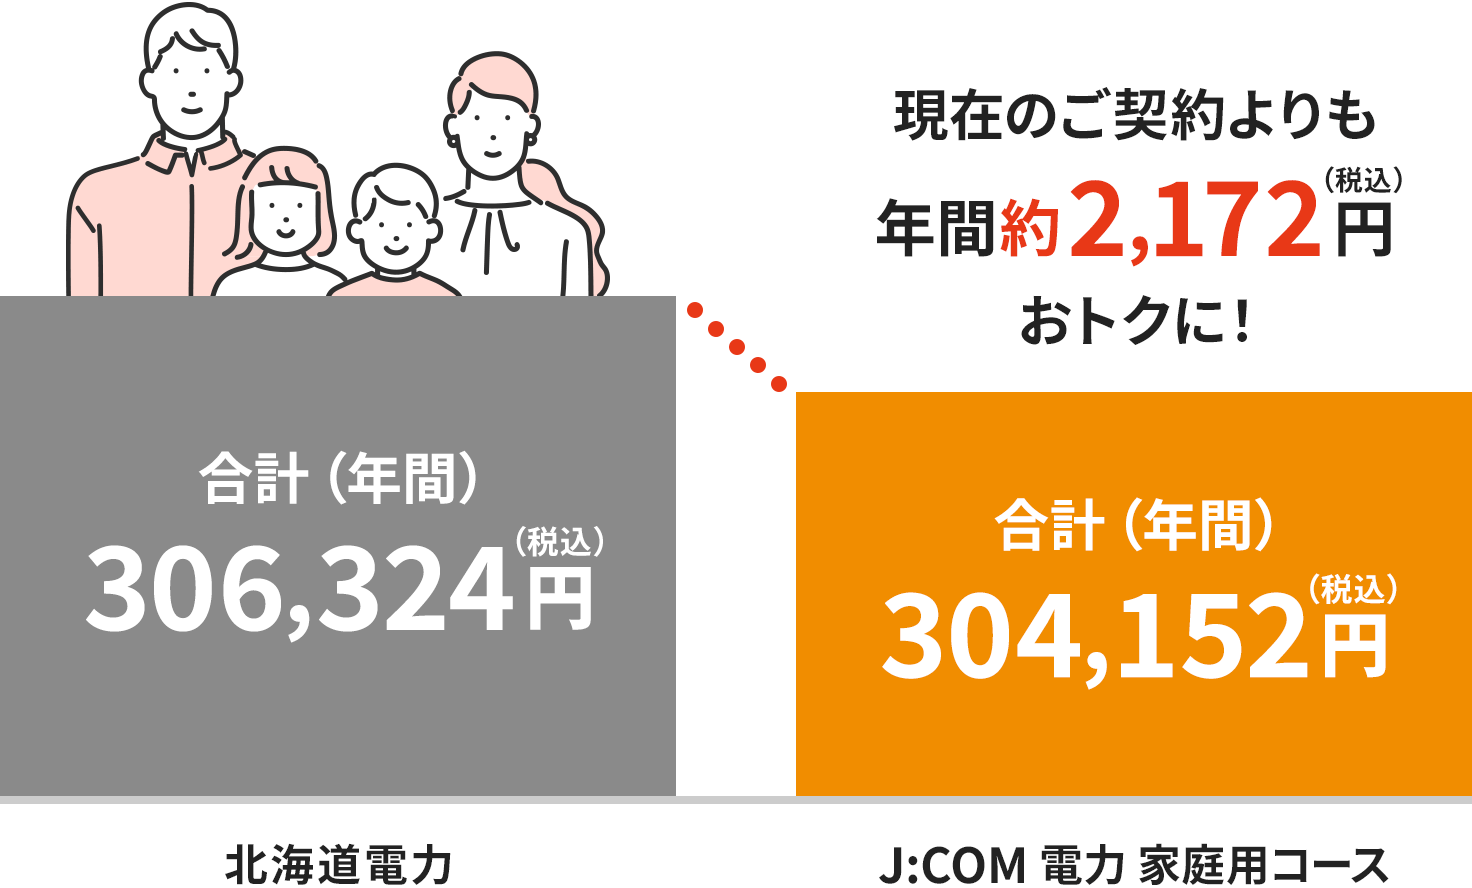 北海道电力地区的费用图像 (4人家庭的情况)